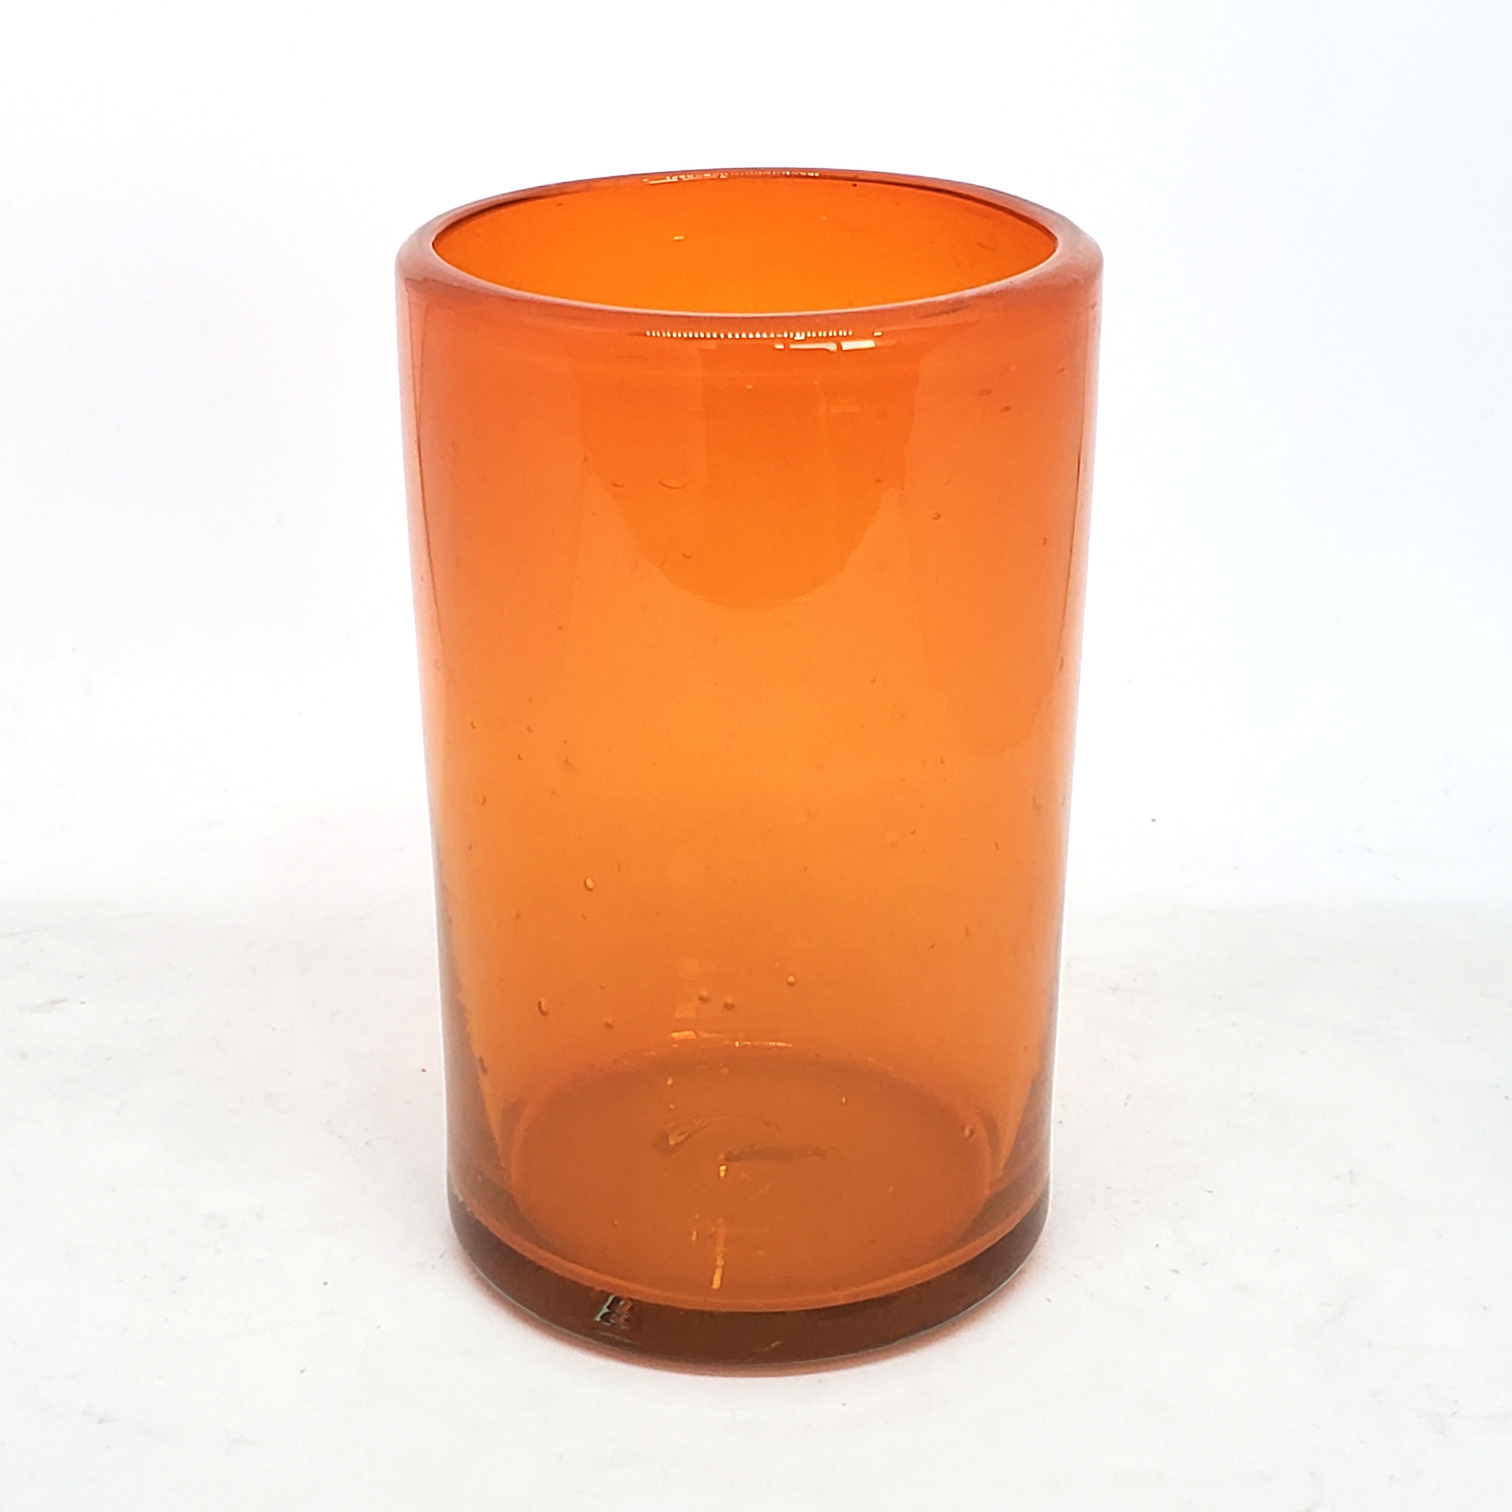 Colores Solidos / Juego de 6 vasos grandes color naranja / Éstos artesanales vasos le darán un toque clásico a su bebida favorita.